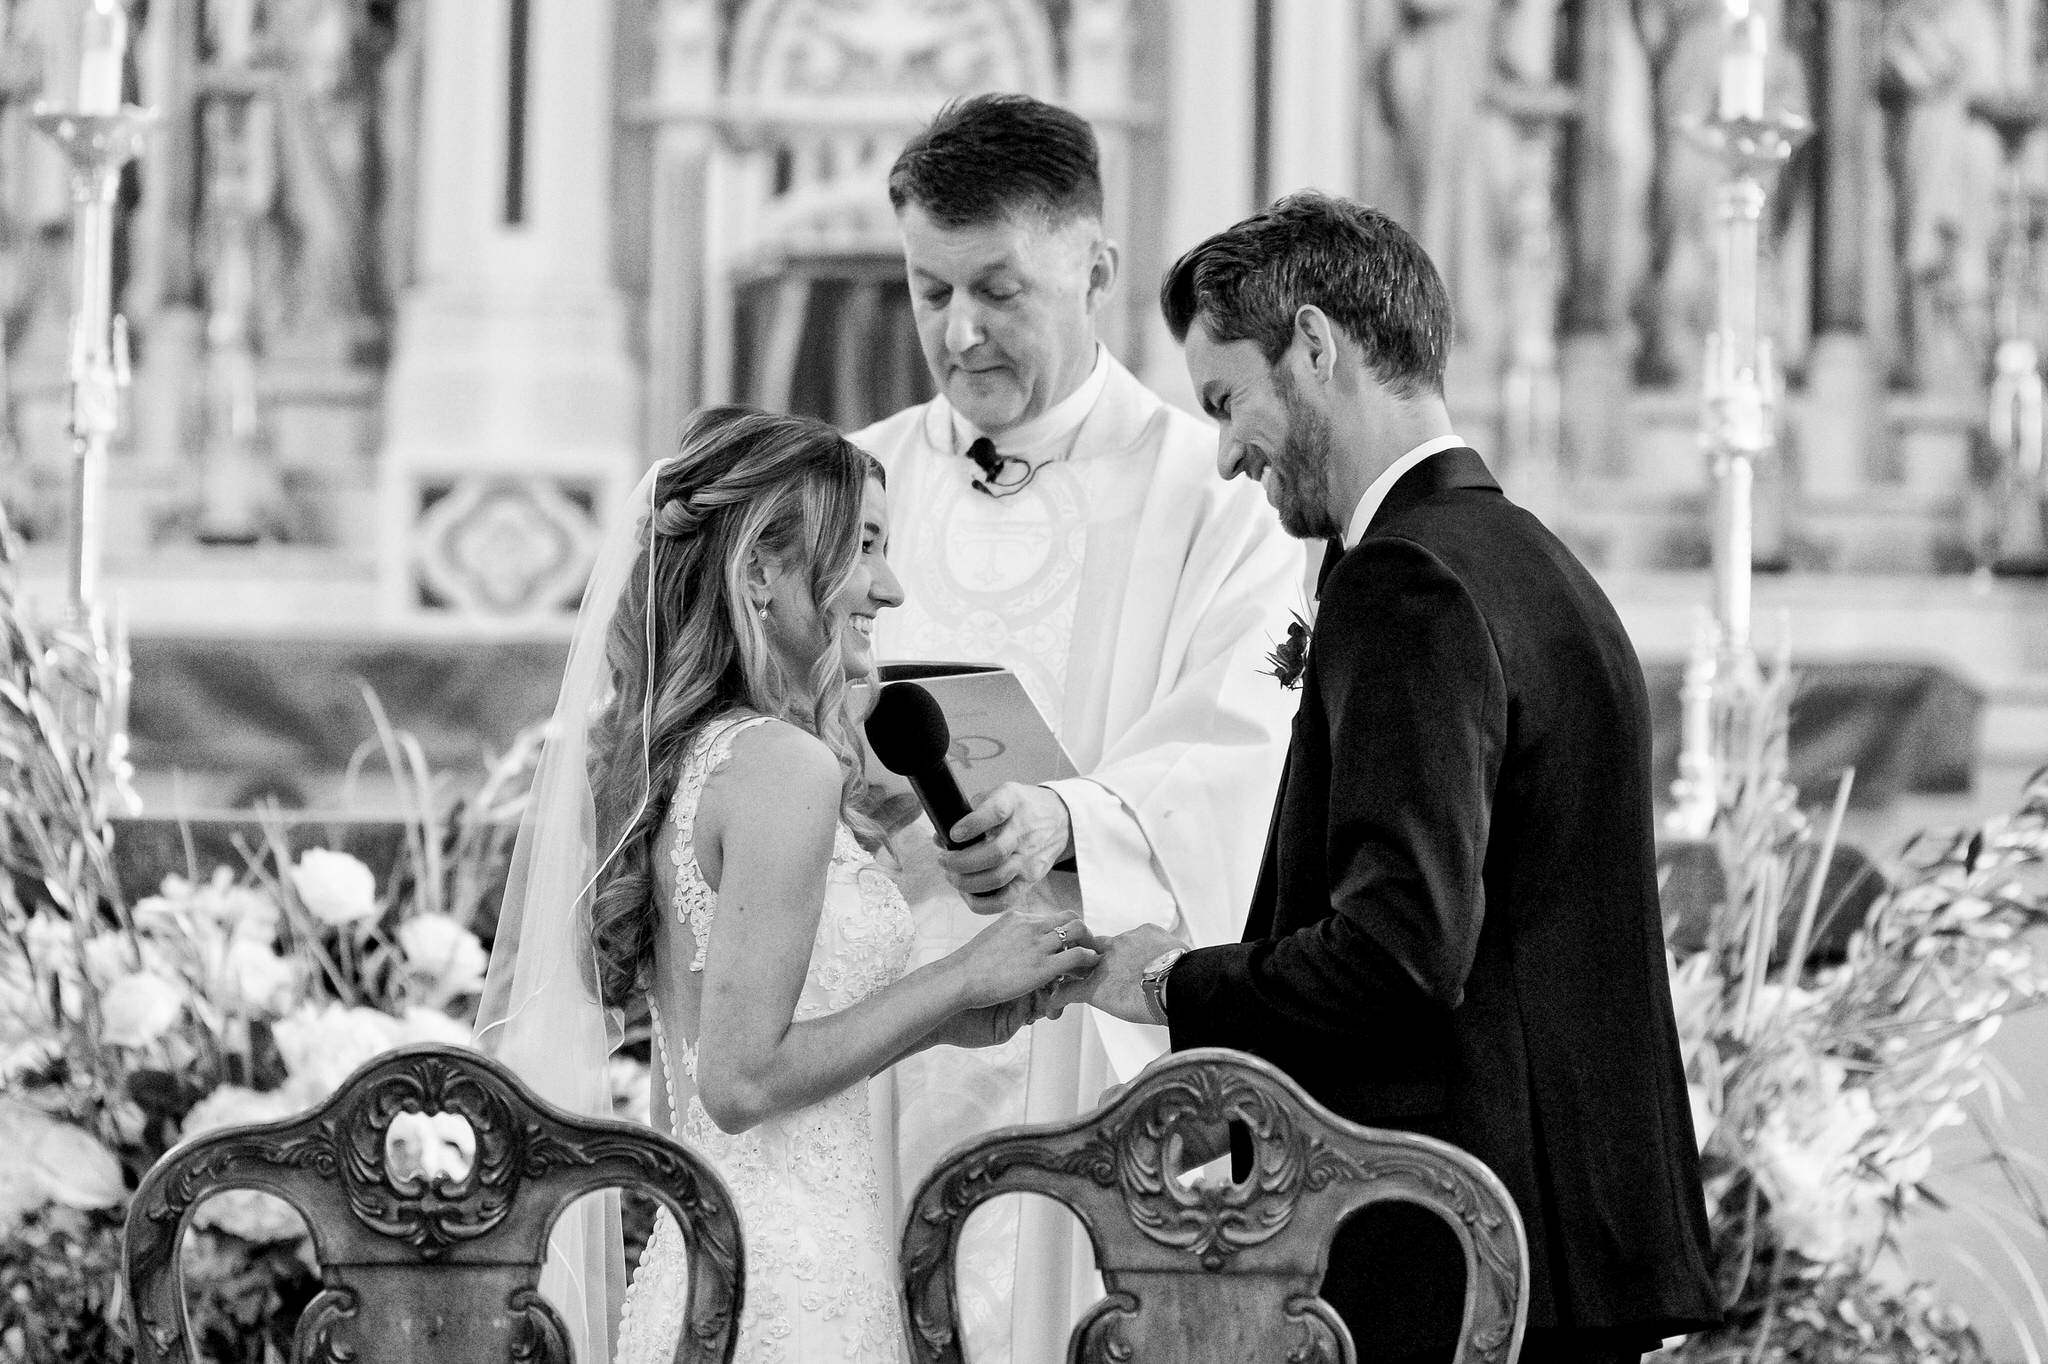 A vow exchange at St. Anne de Detroit wedding.  